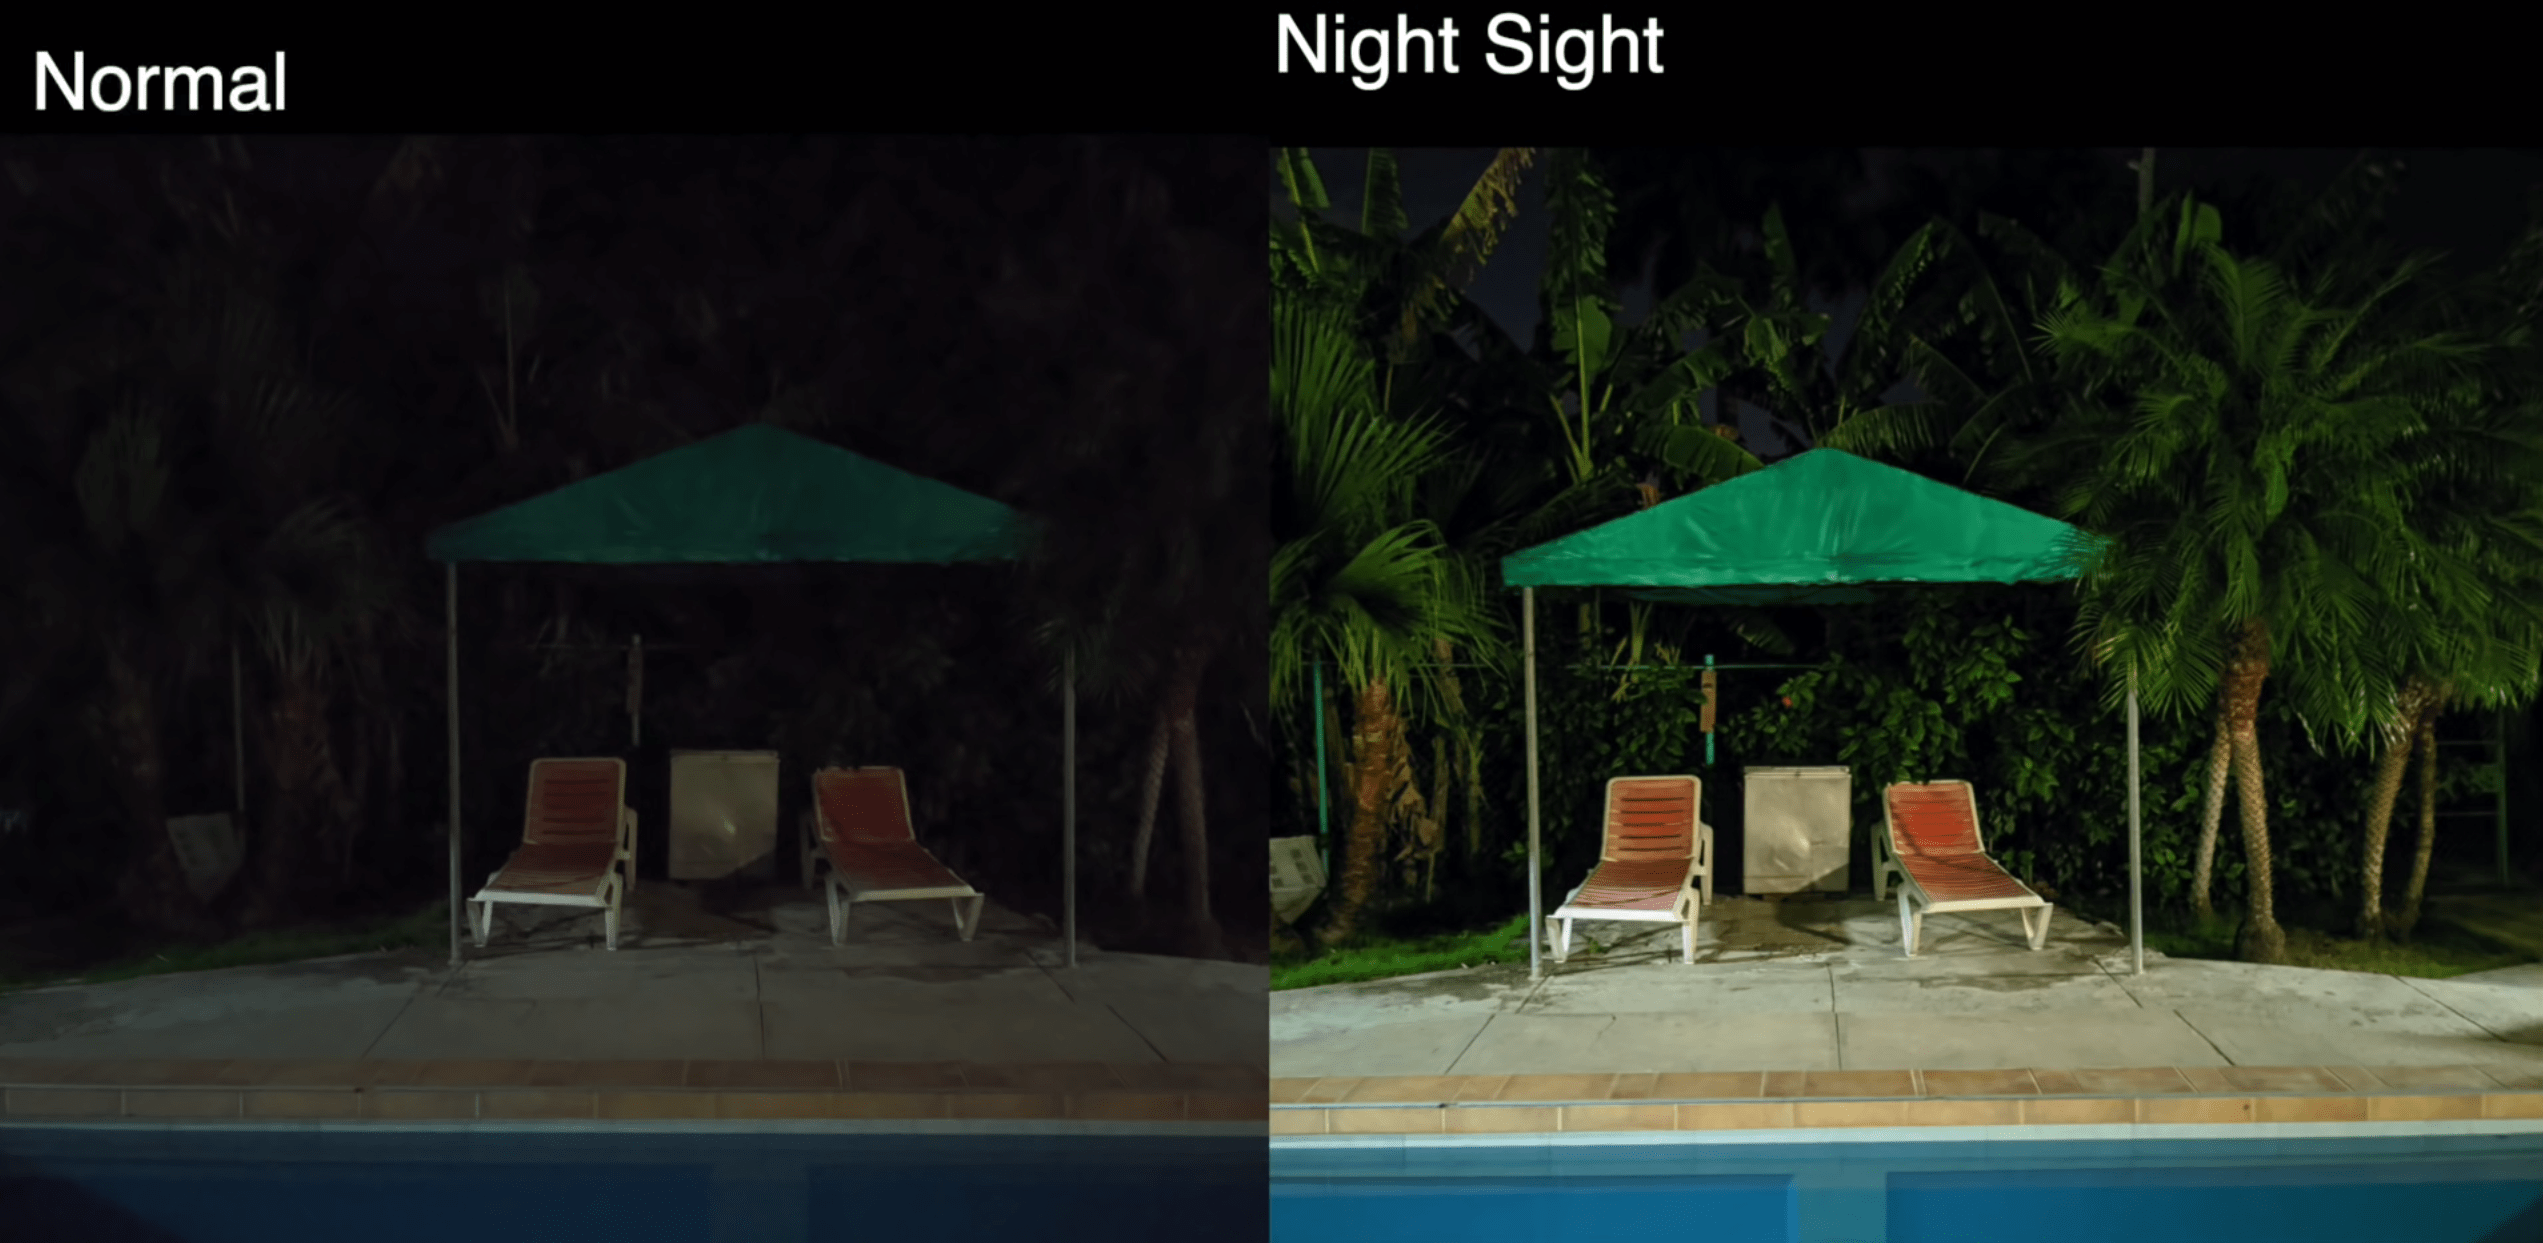 Le mode nuit du Google Pixel 4a